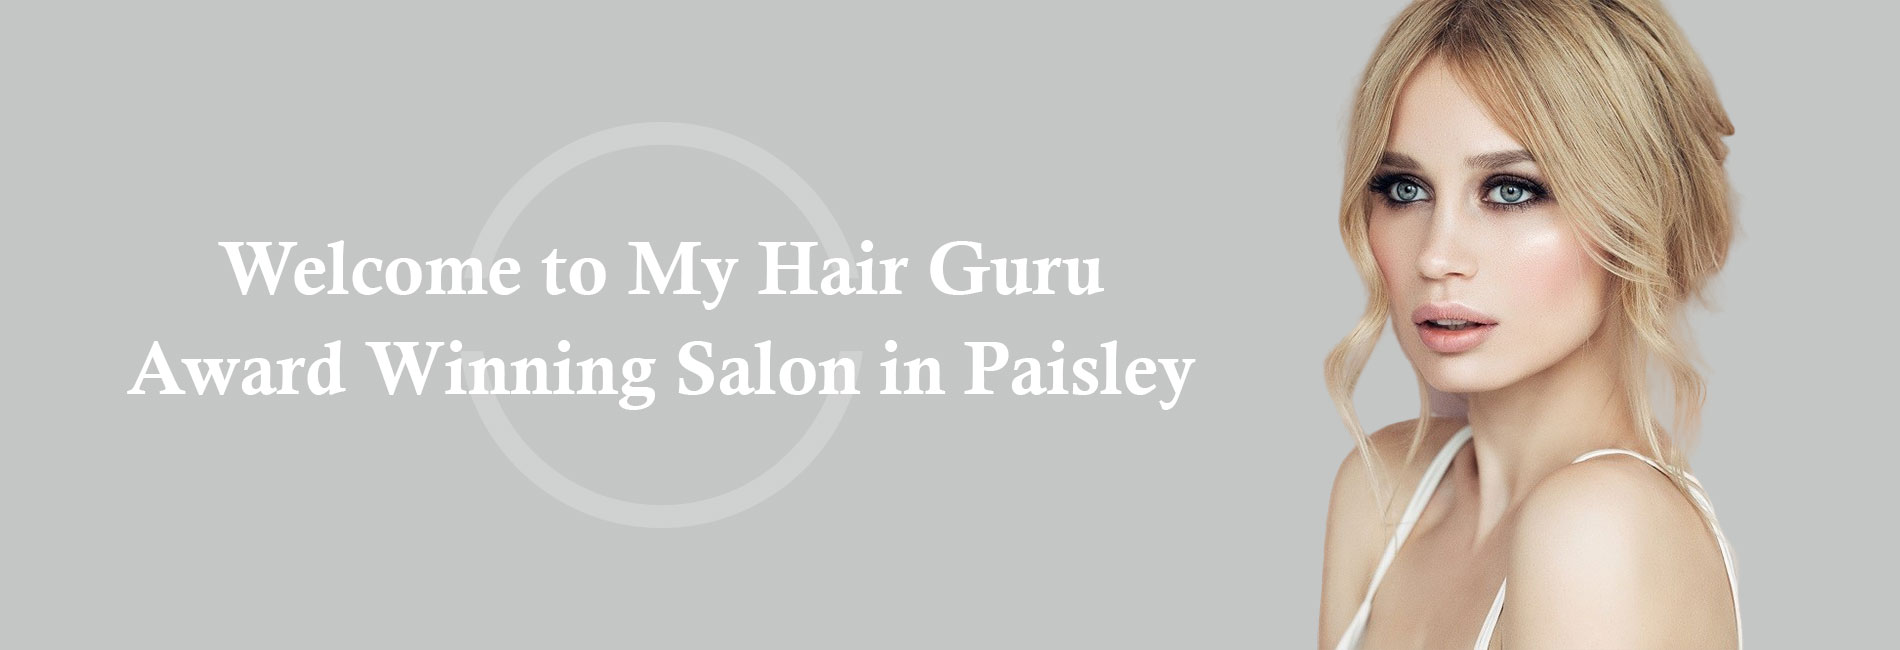 My Hair Guru - Homepage | My Hair Guru